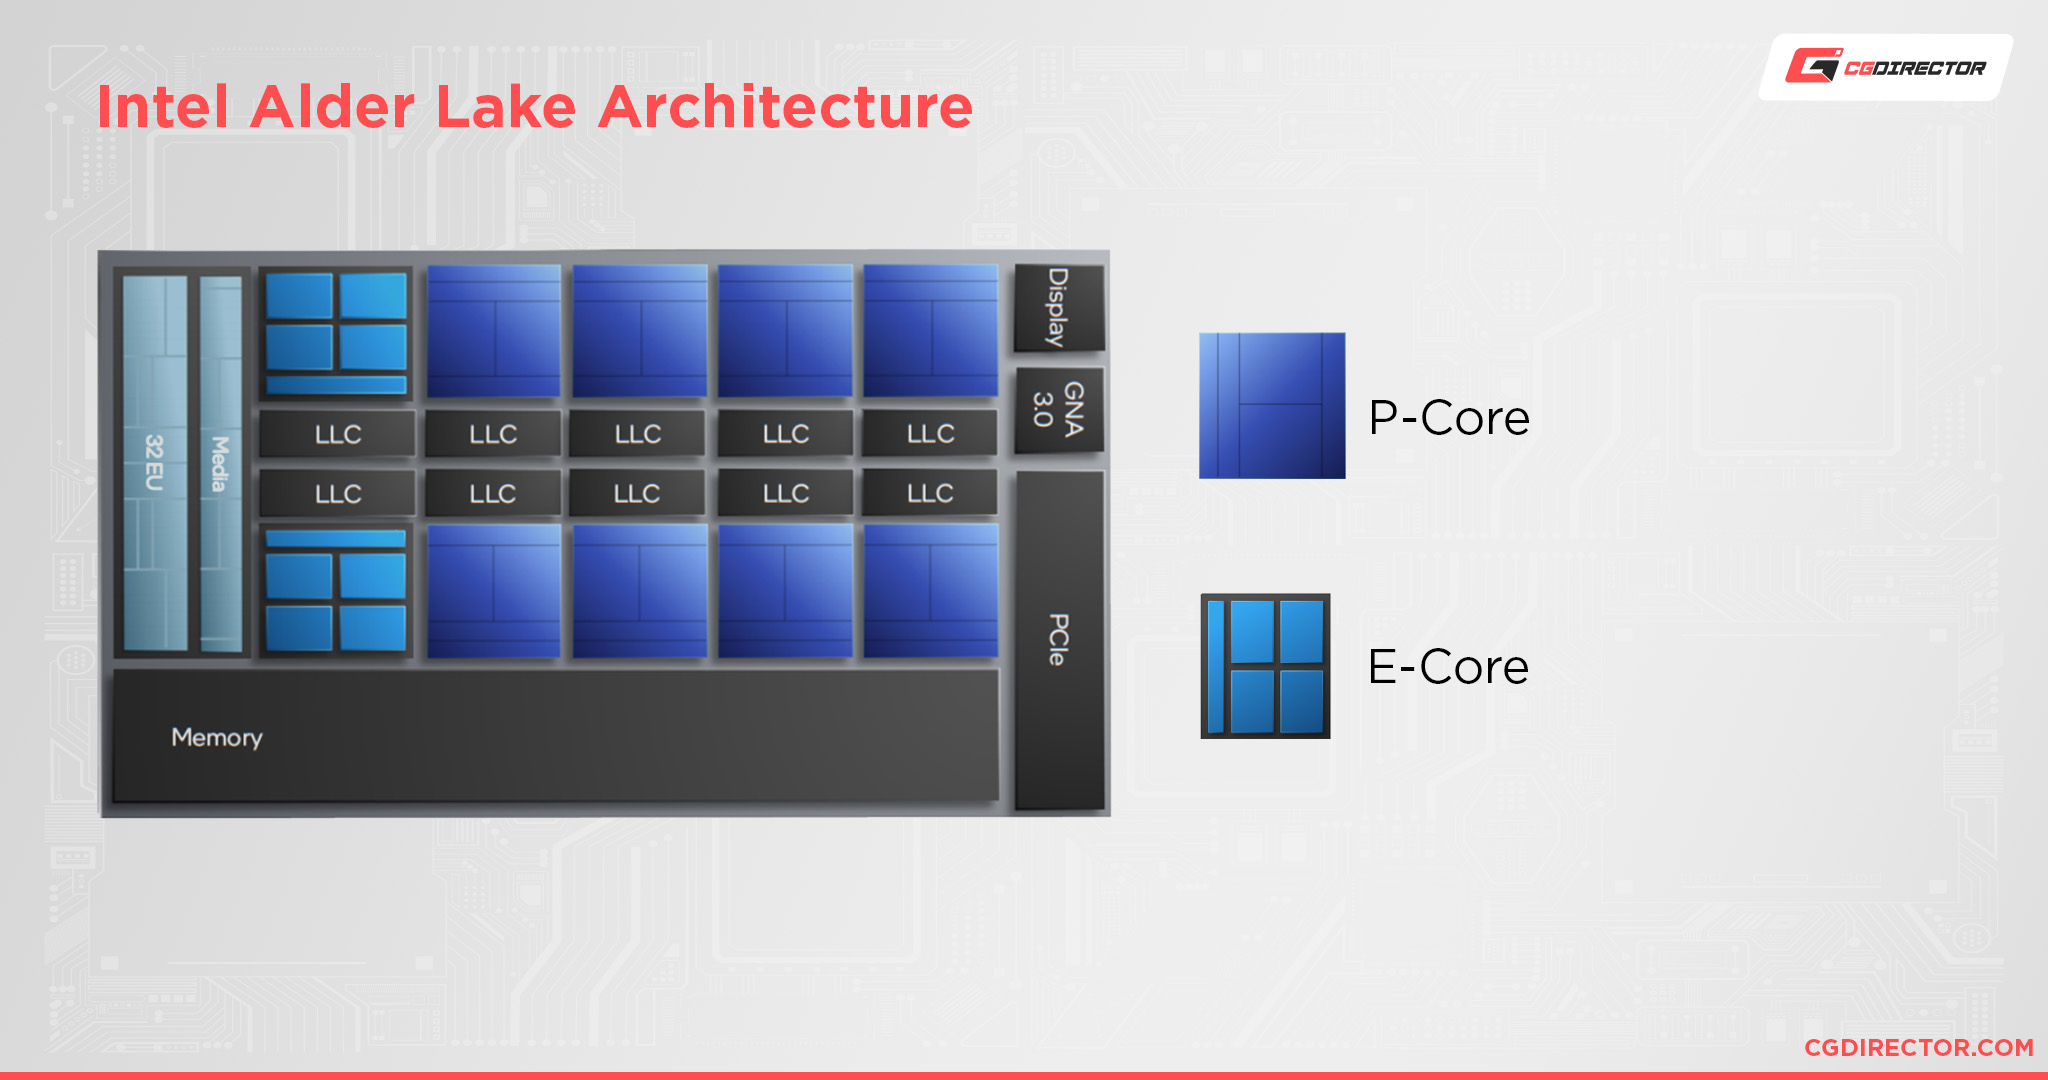 Intel Alder Lake Architecture